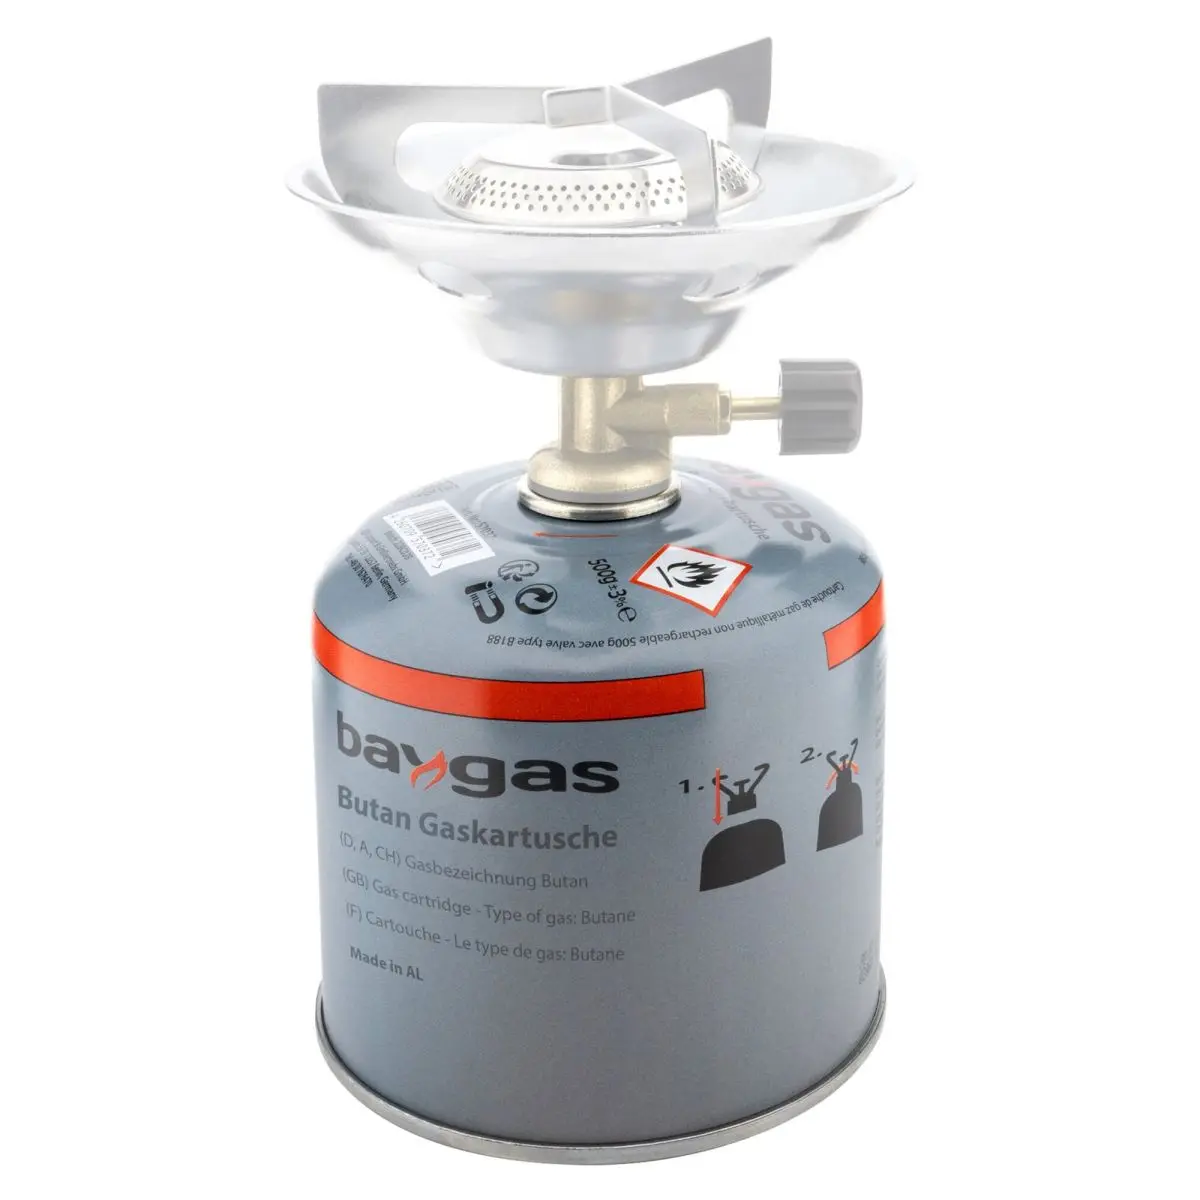 Ventilkartusche - Baygas 500g mit Schraubverschluss, Butangas